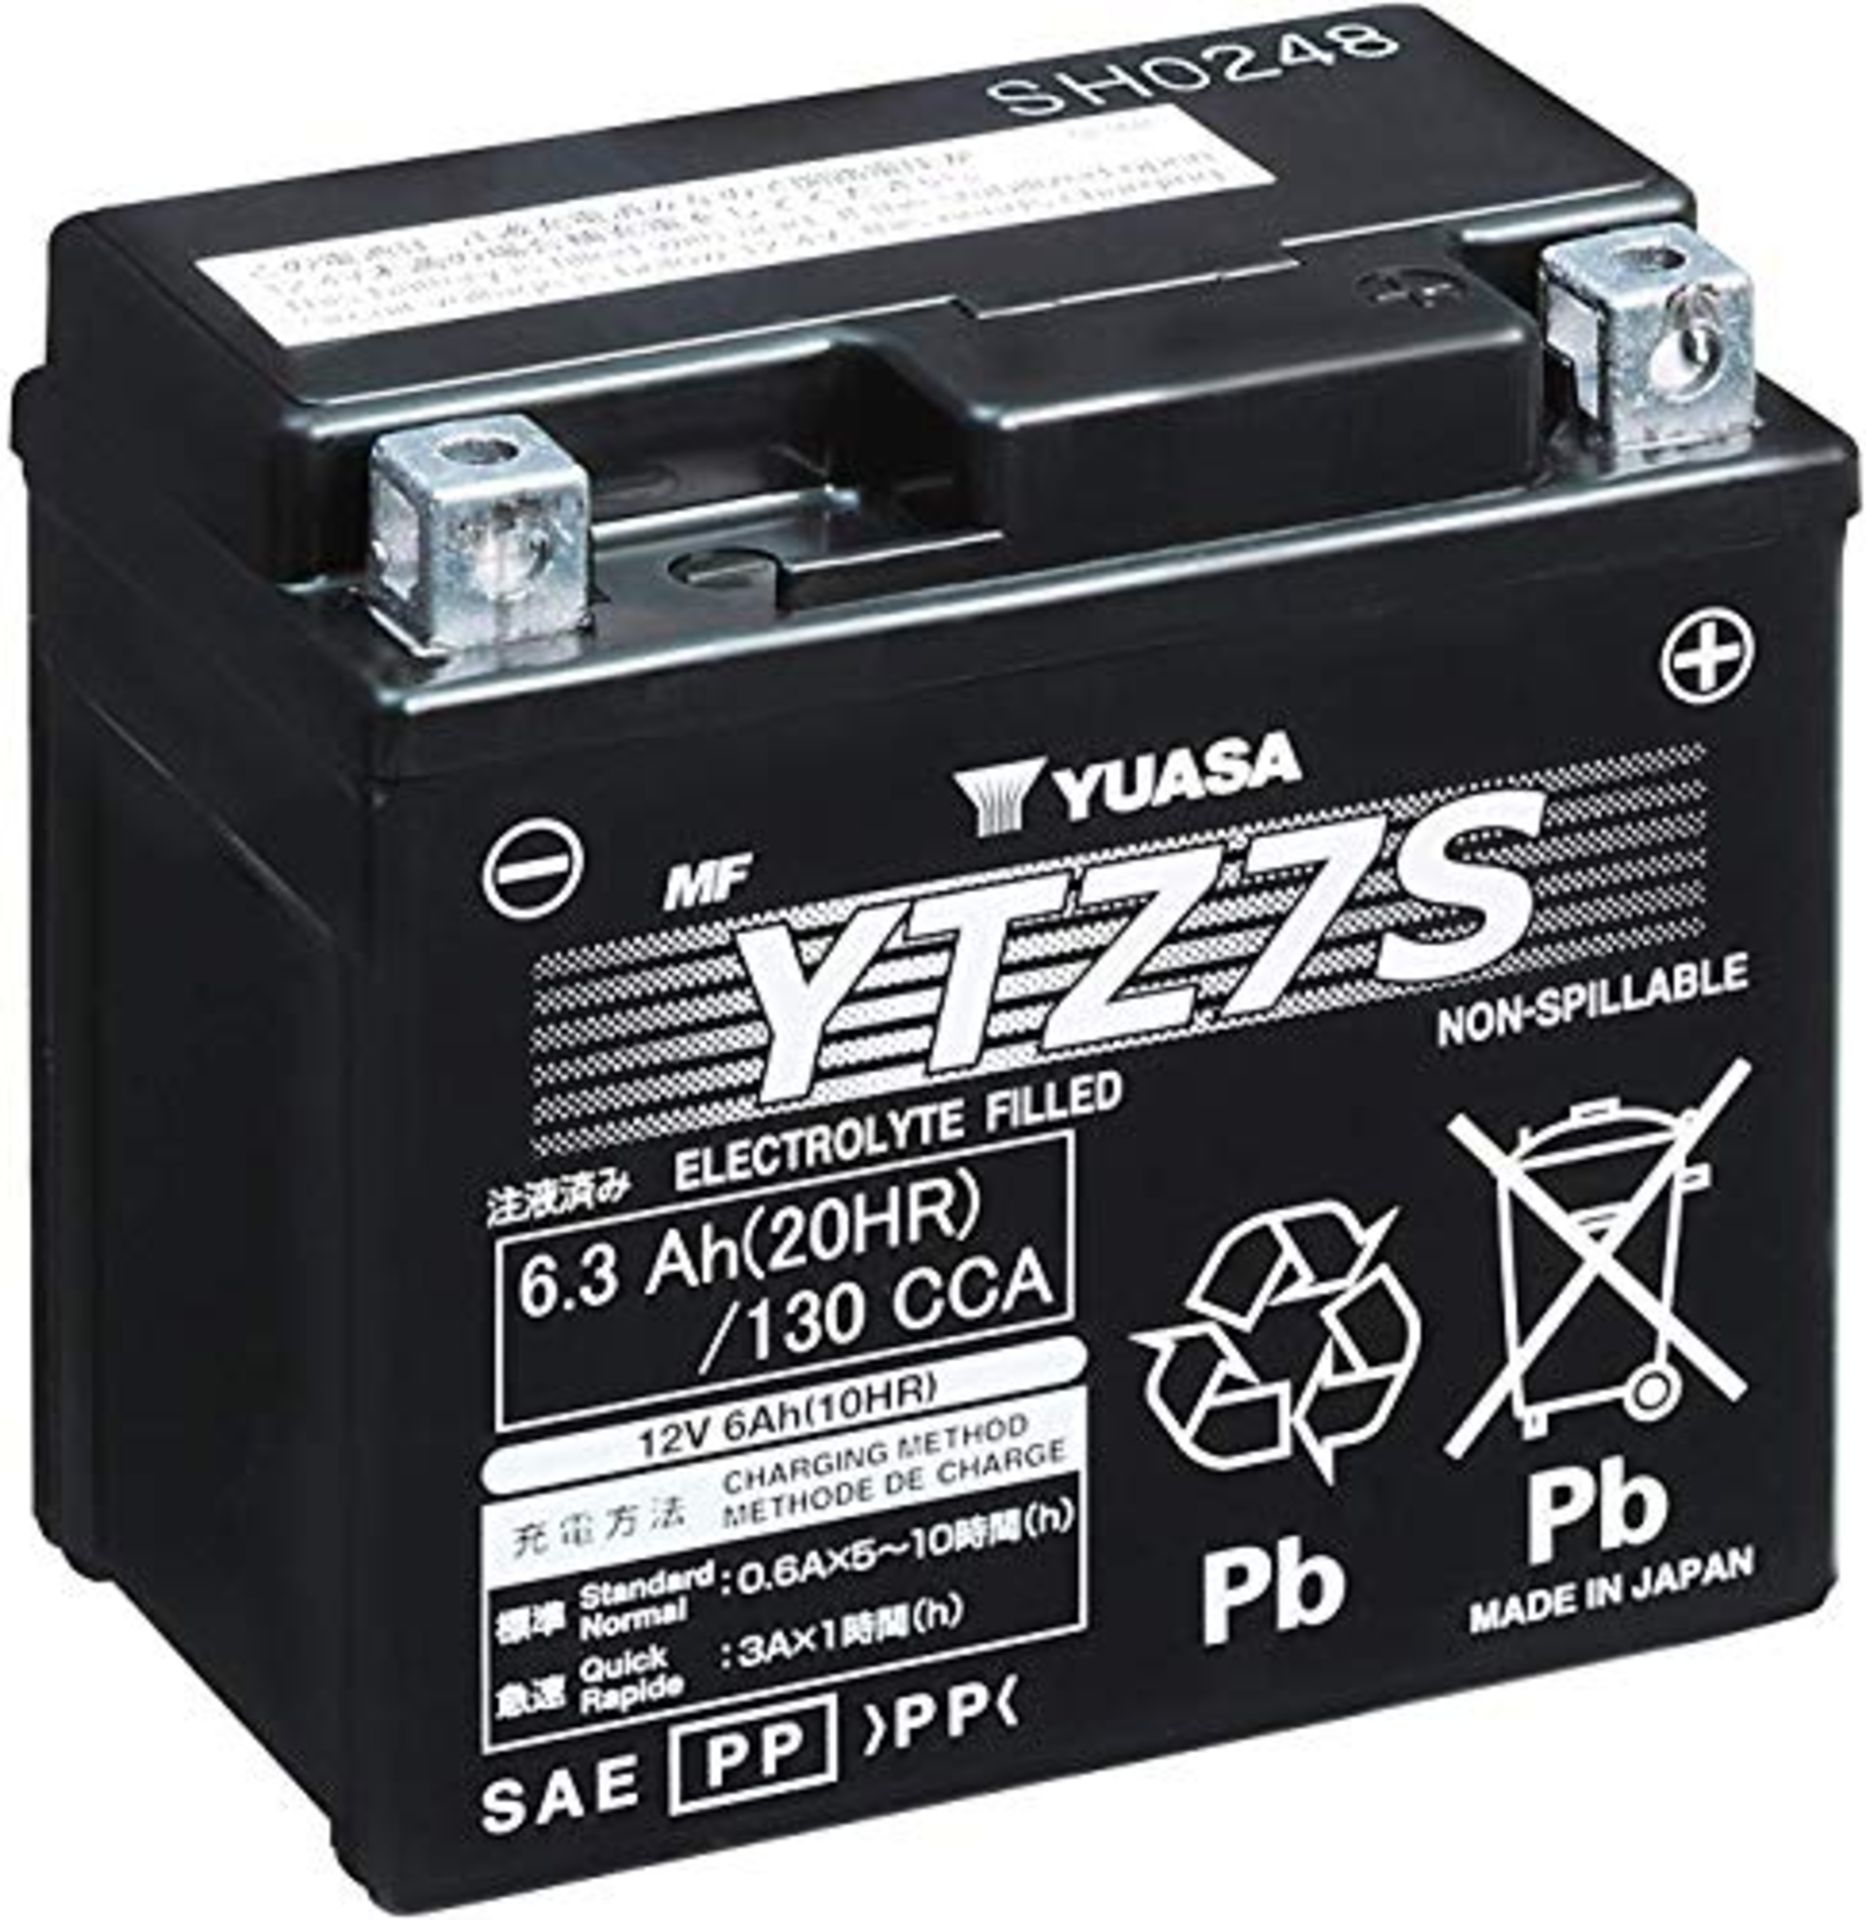 RRP £98.00 Yuasa Batteries YTZ7S